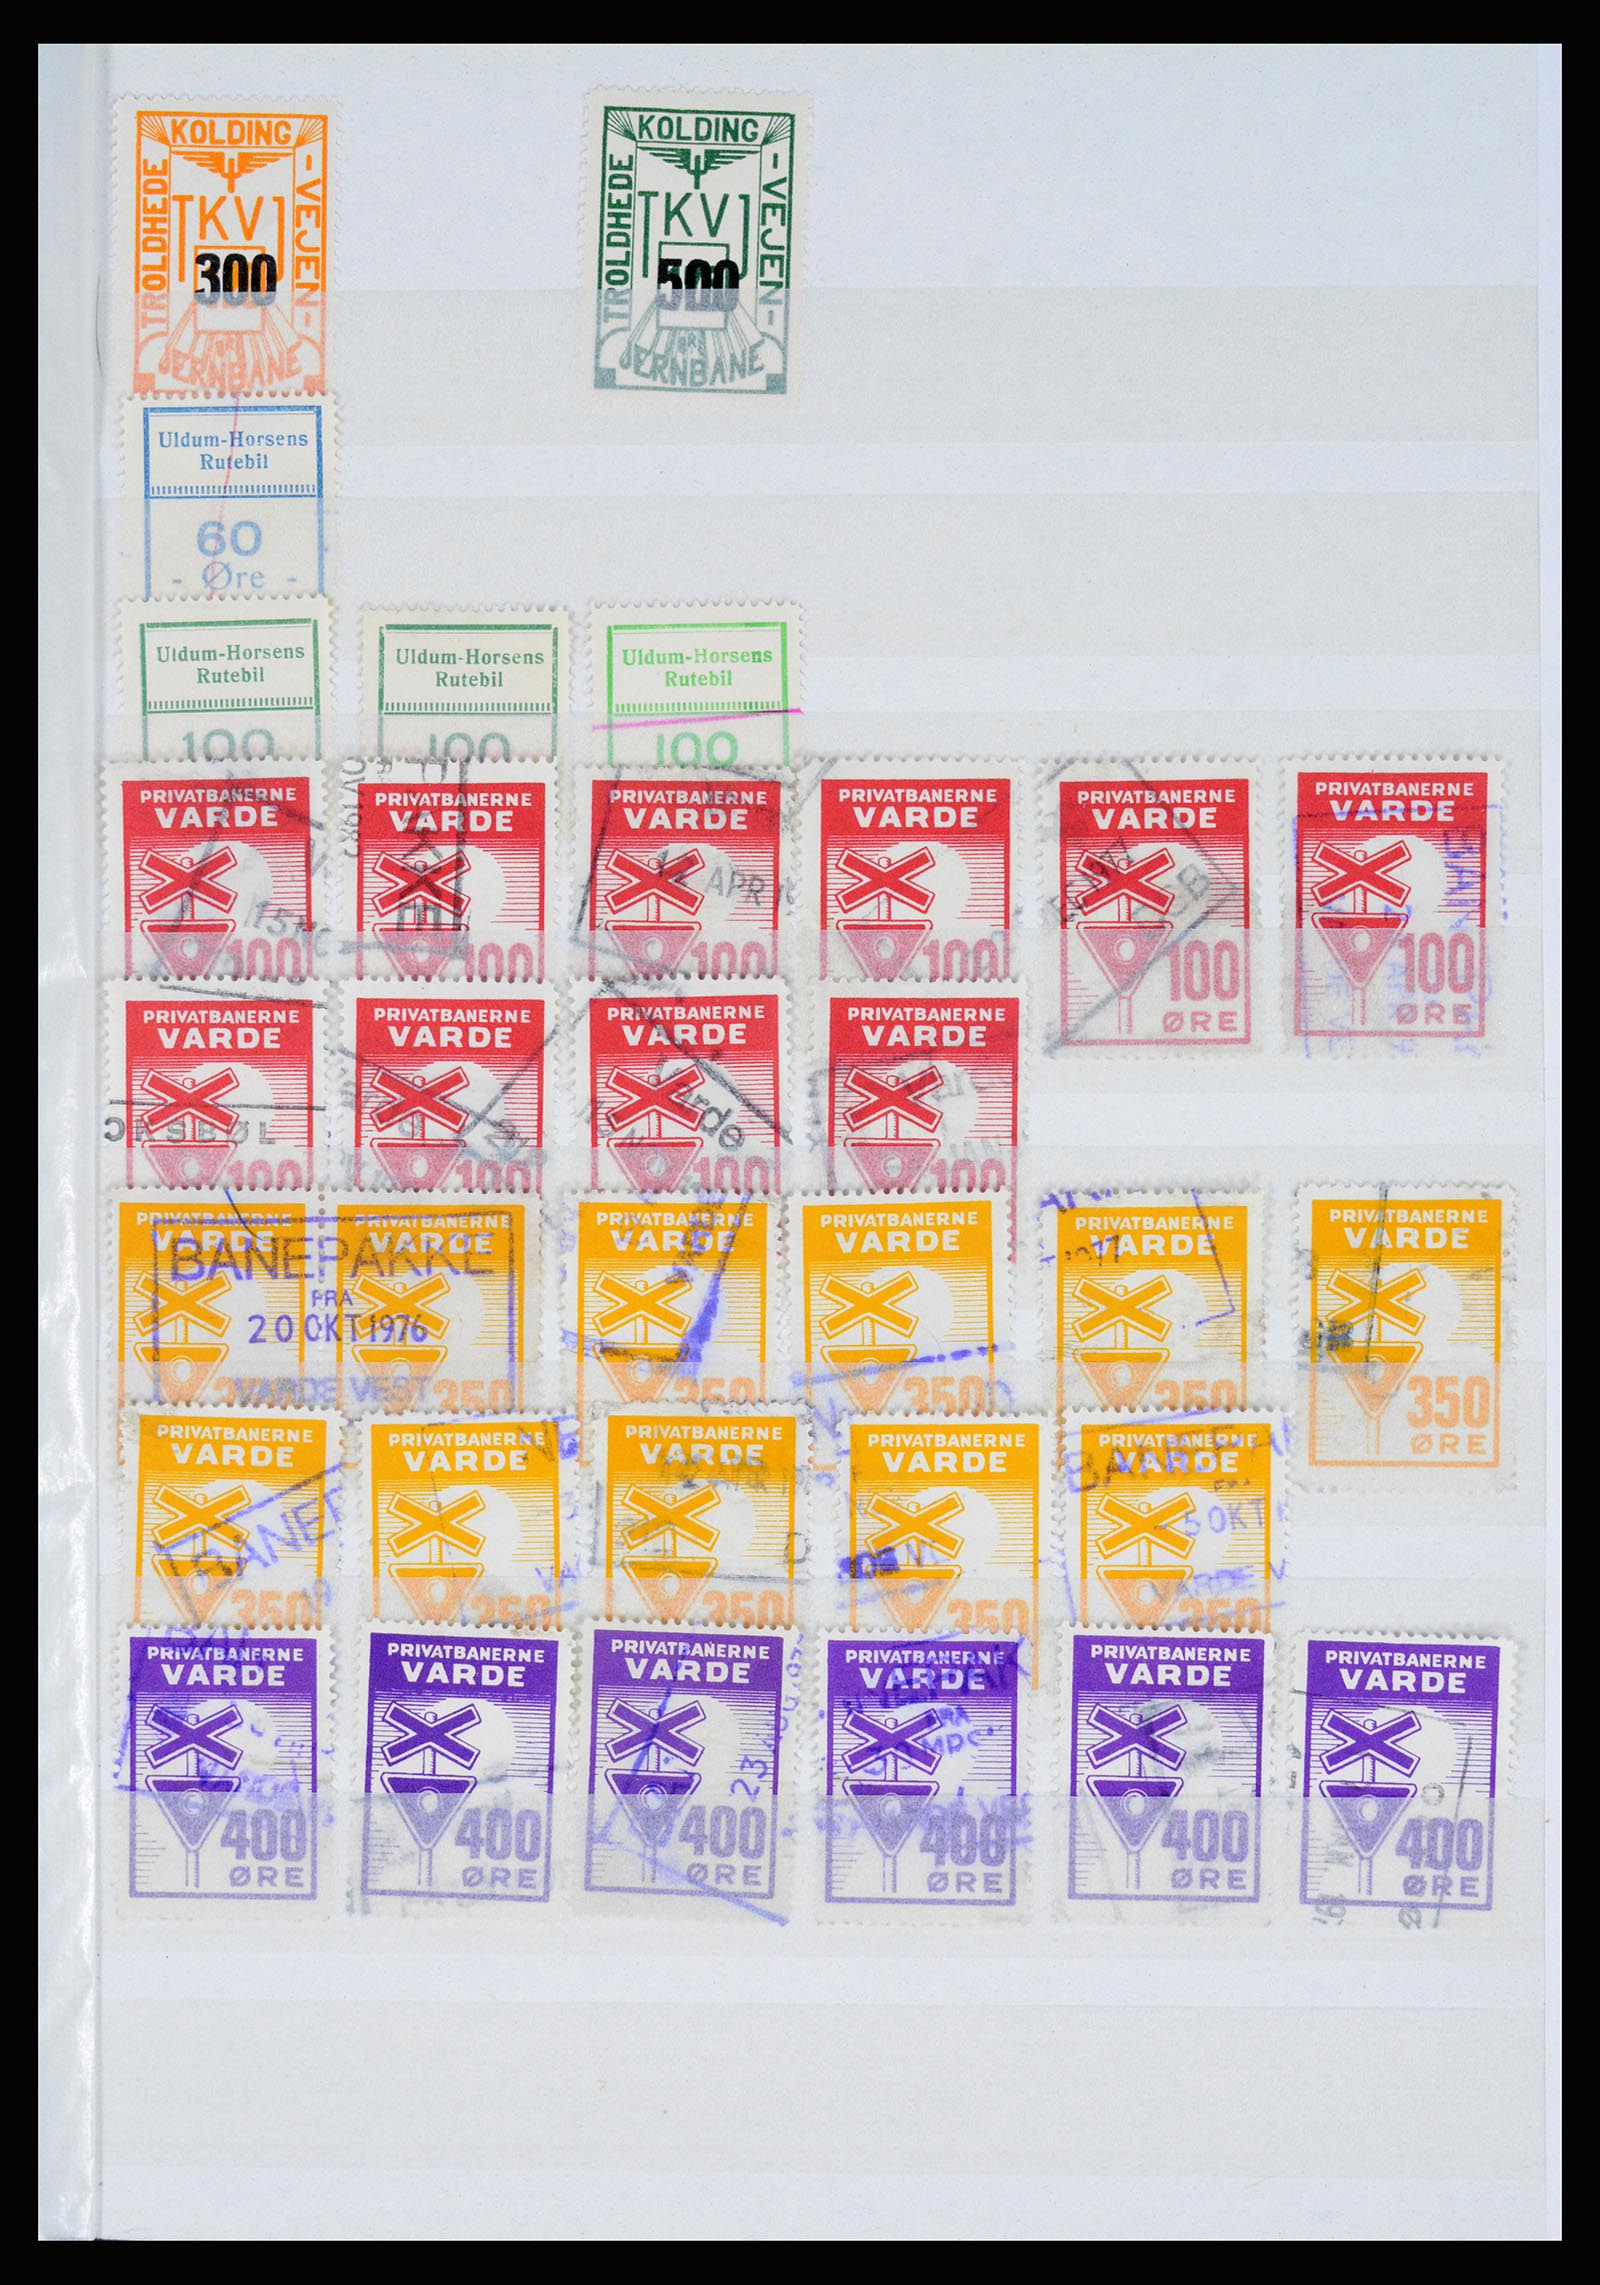 36982 132 - Postzegelverzameling 36982 Denemarken spoorwegzegels.